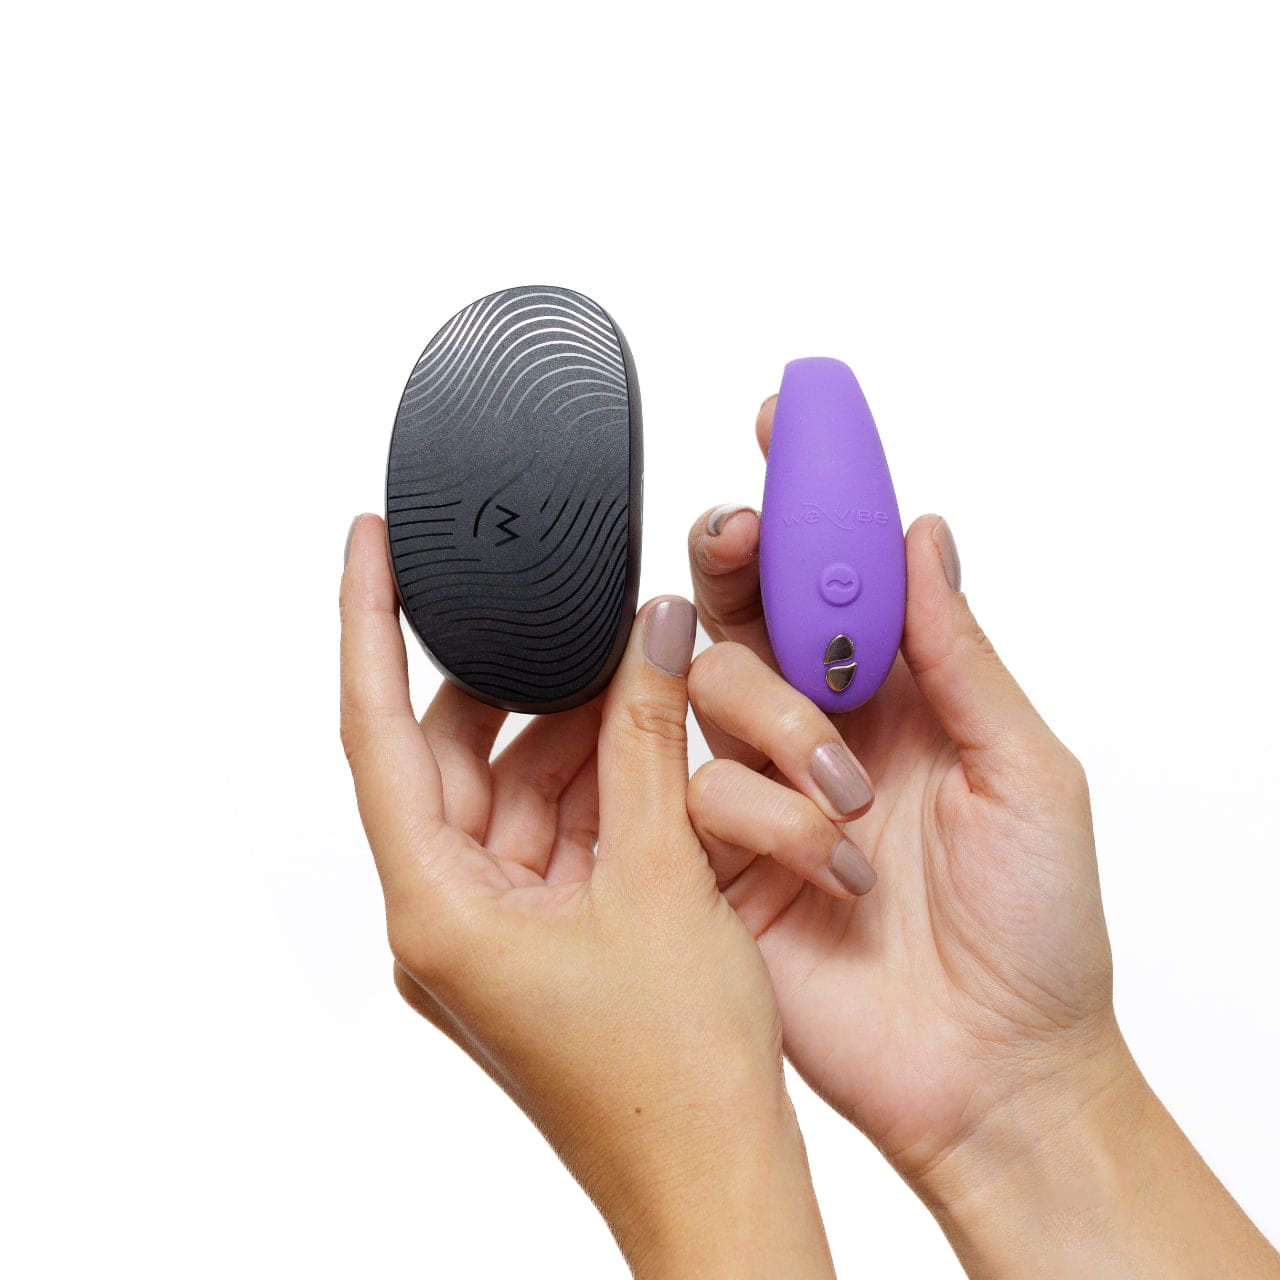 We-Vibe® Sync Go Smart Partner Vibrator Light Purple - Rolik®